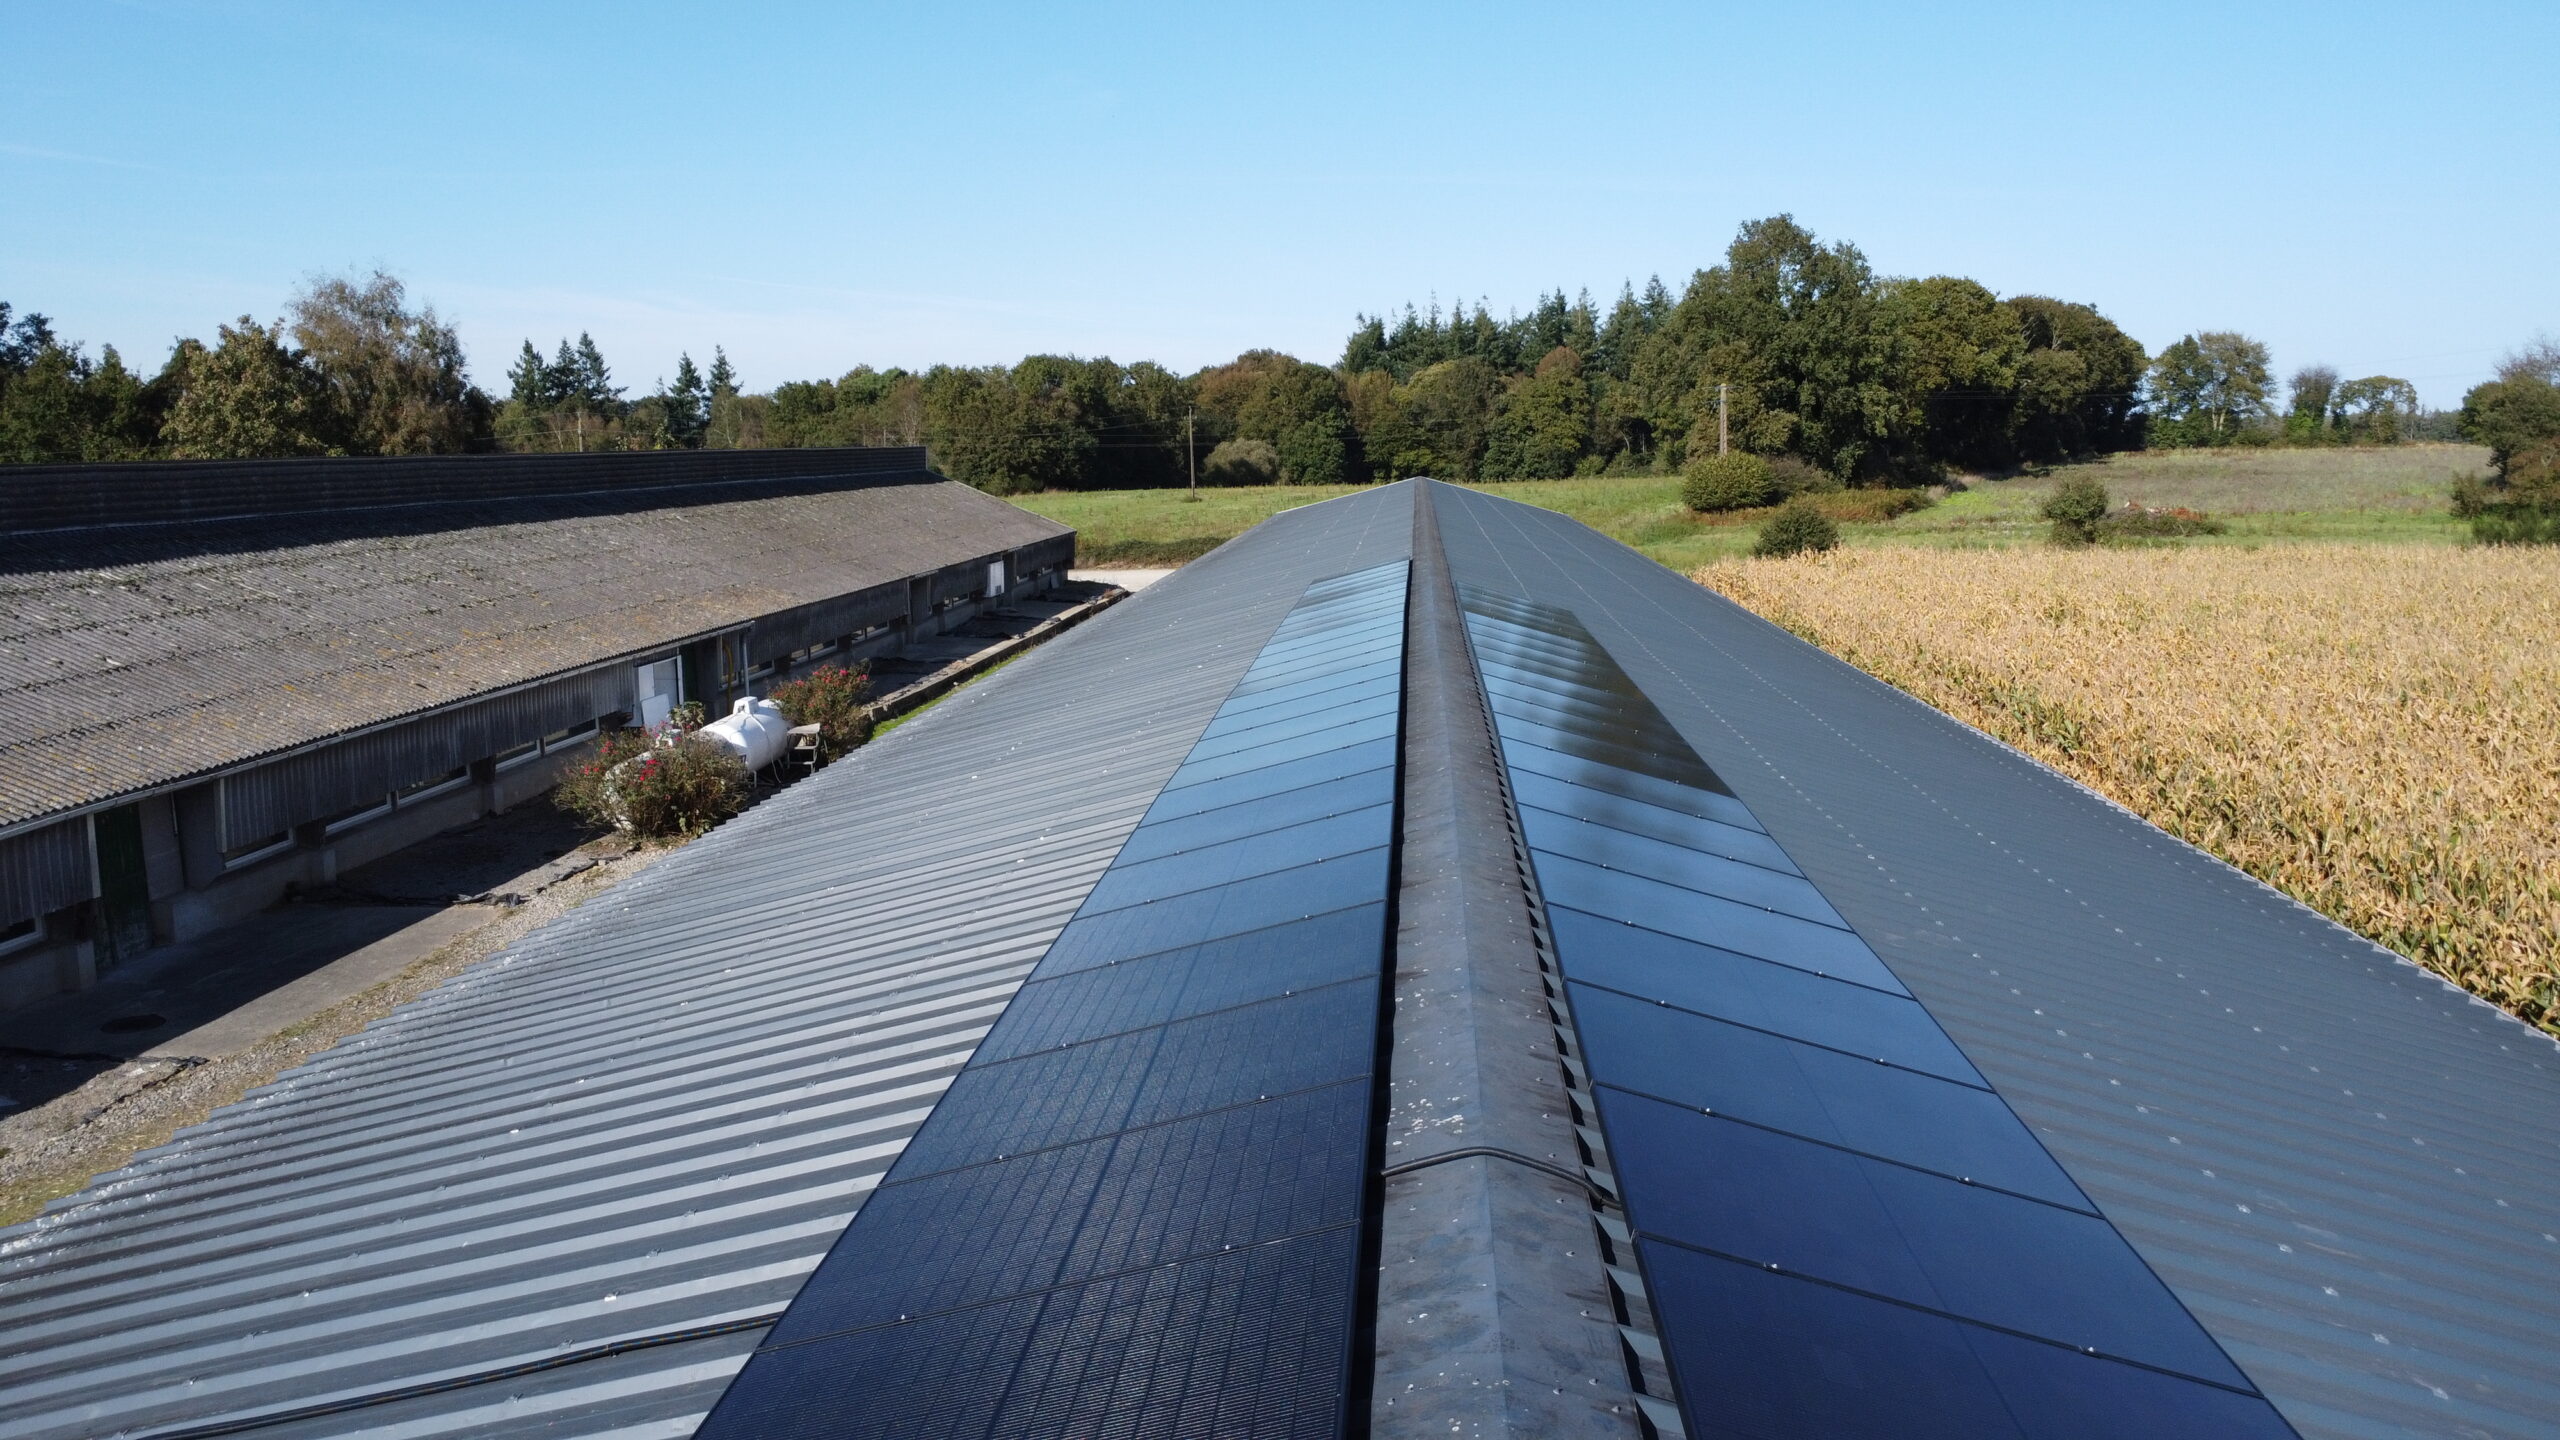 Installation panneaux photovoltaique dans une exploitation agricole vue de drône